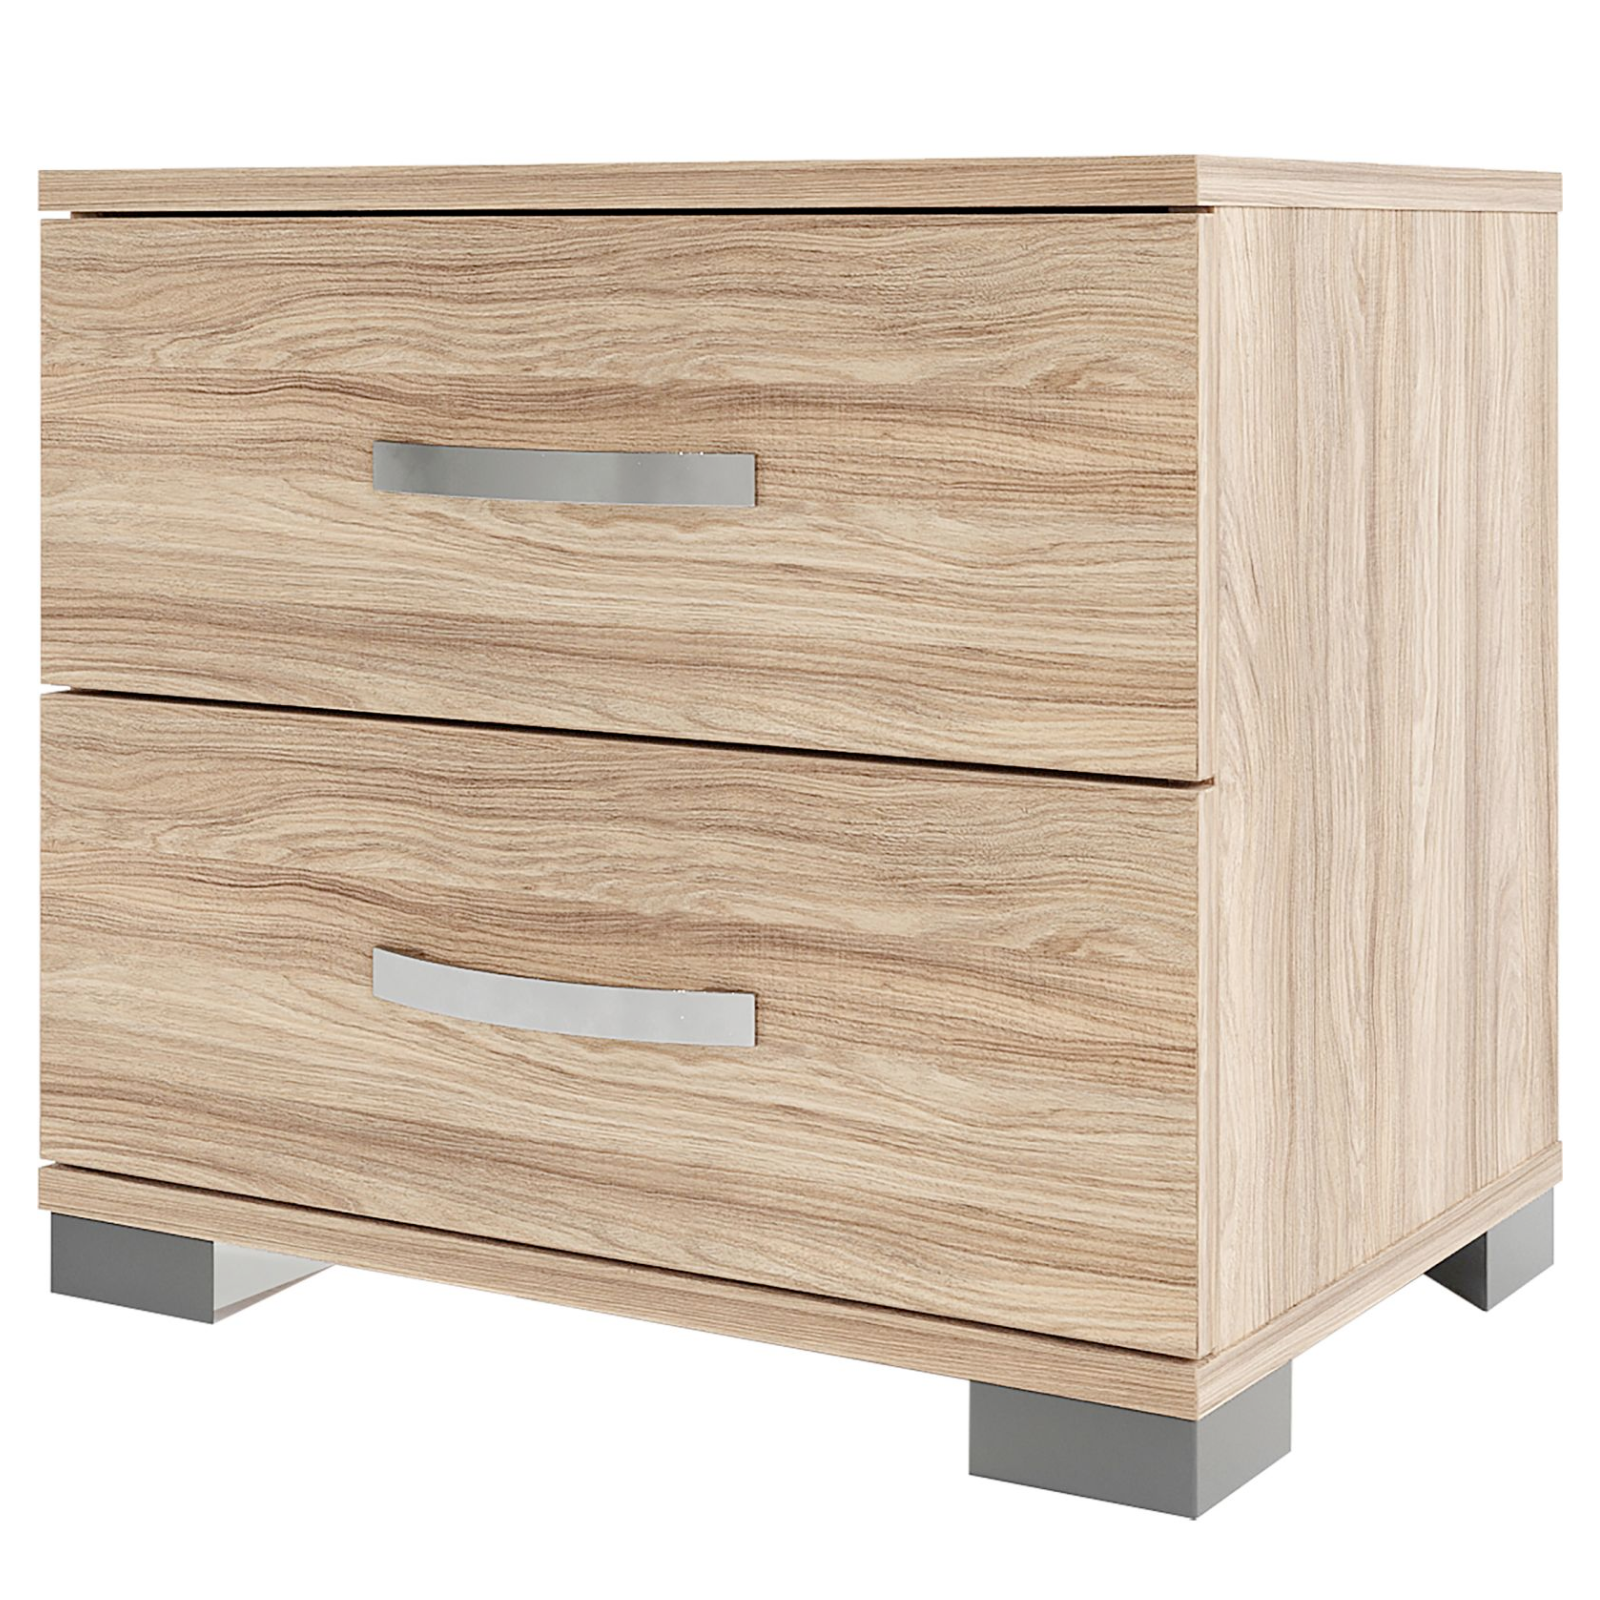 Comodino in legno "Comma" con 2 cassetti design moderno per cameretta o camera da letto